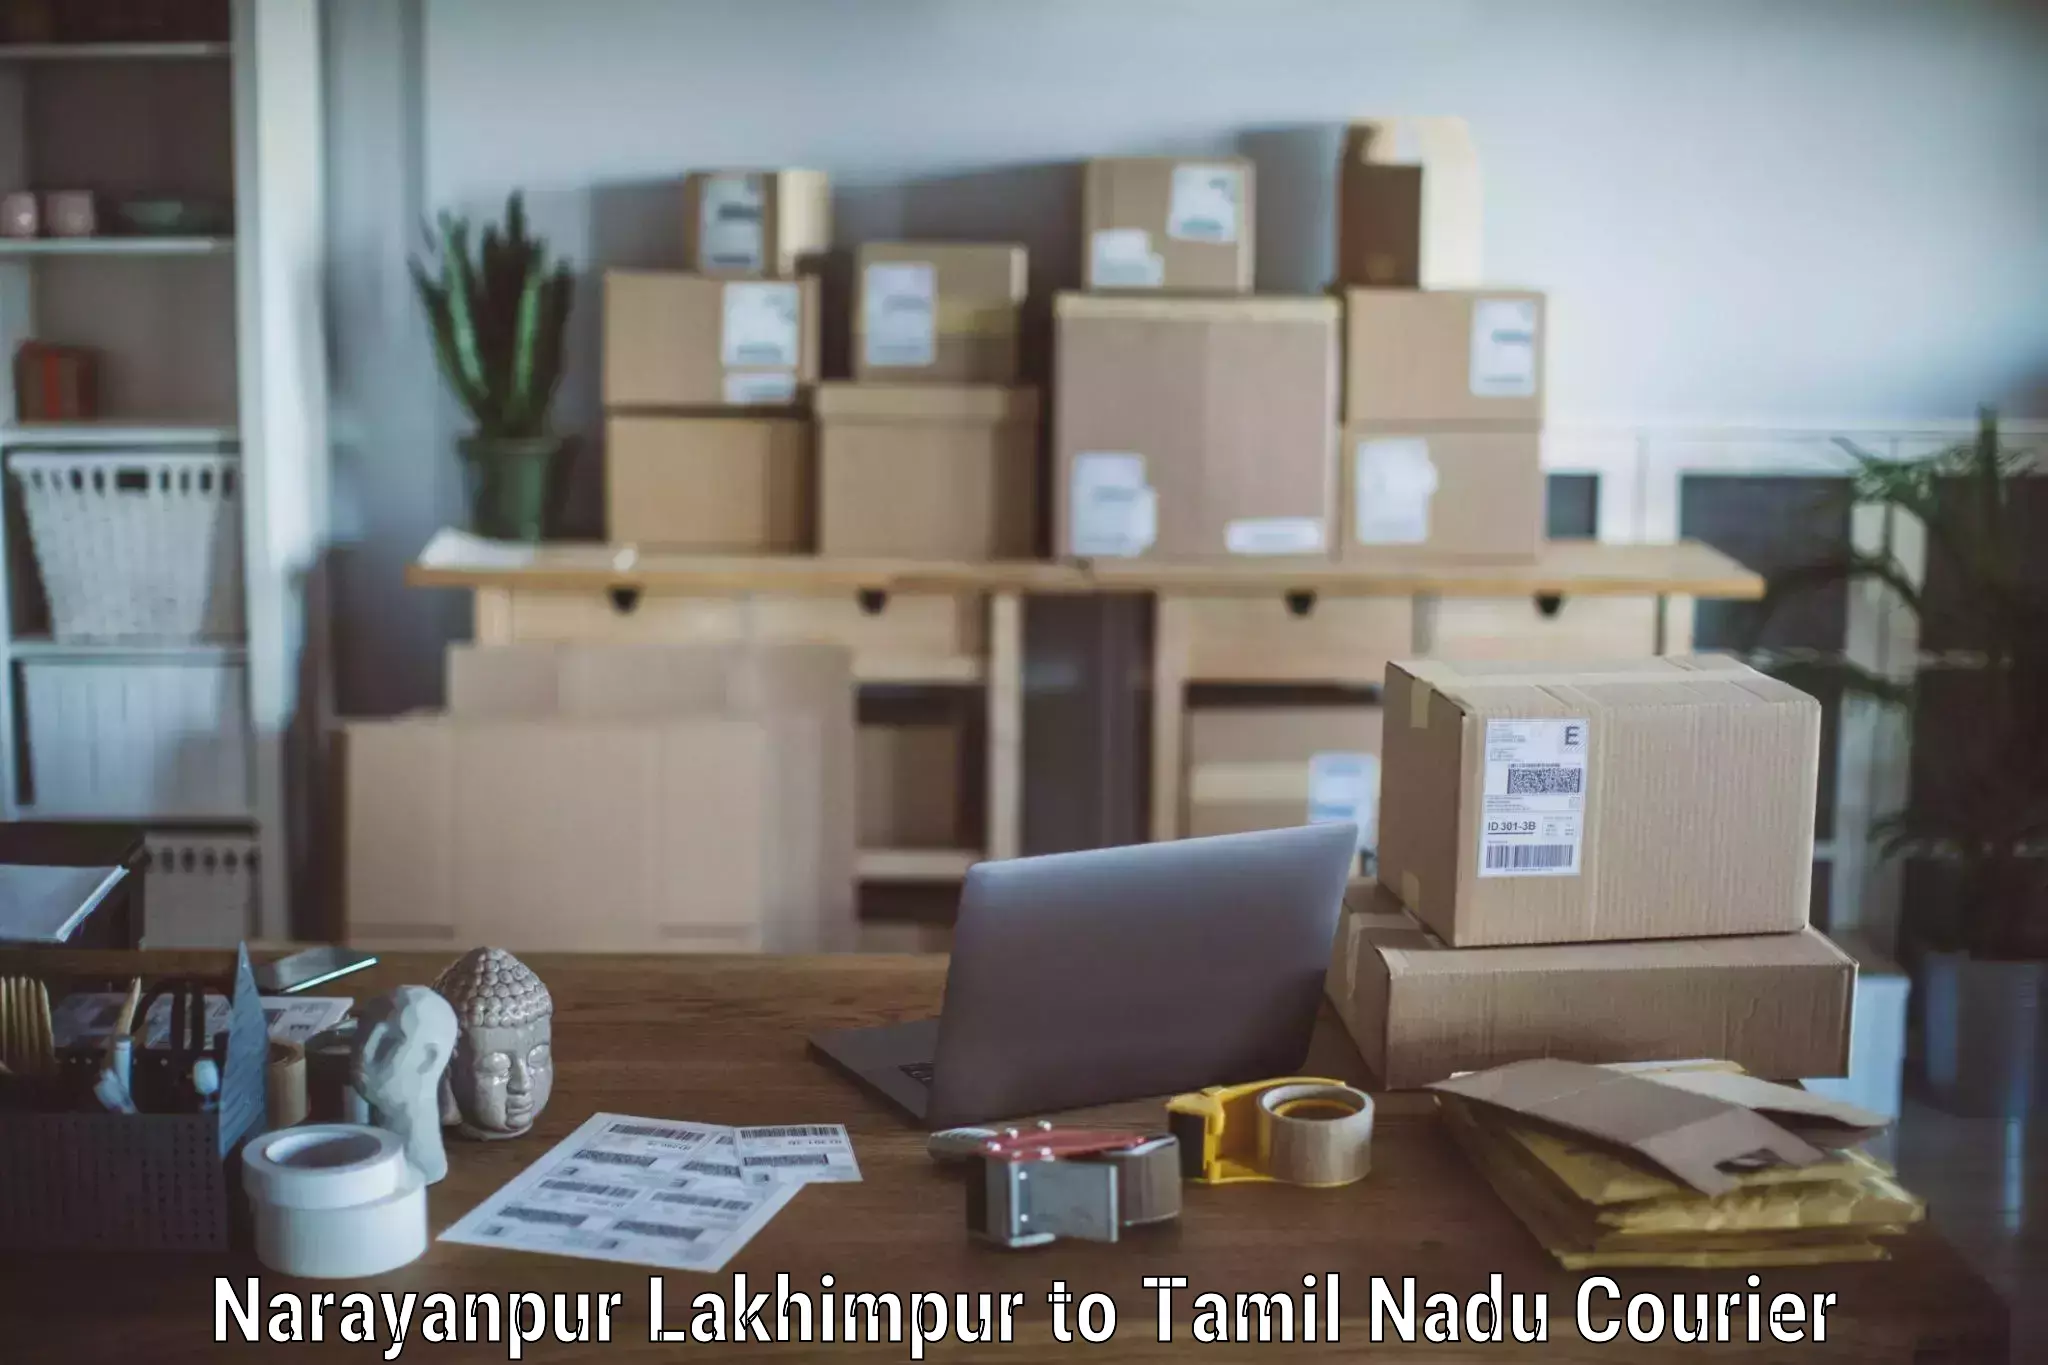 Professional furniture relocation Narayanpur Lakhimpur to Ramanathapuram